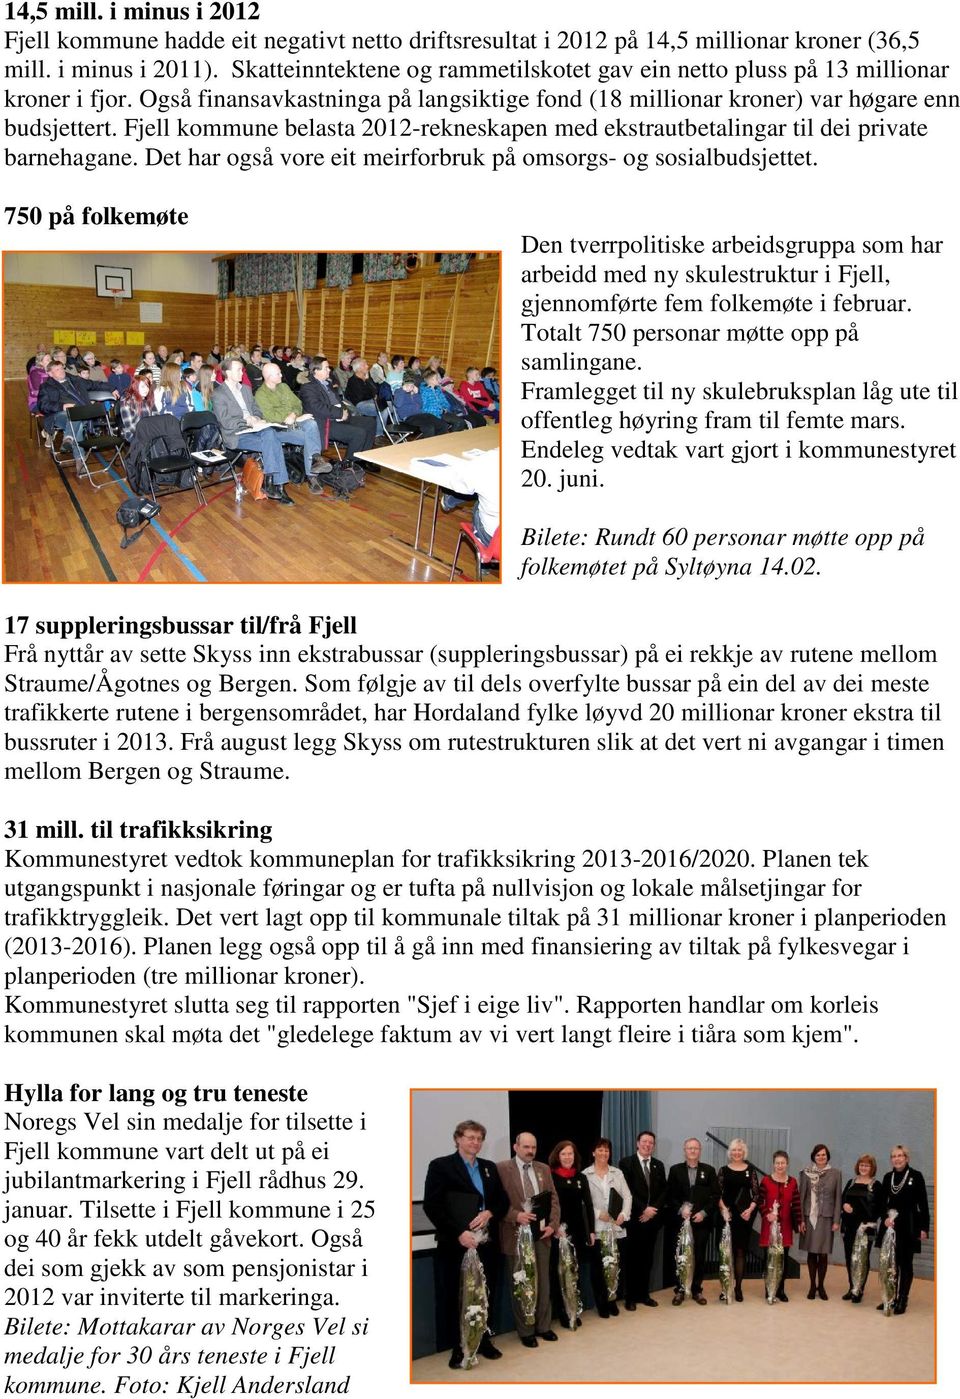 Fjell kommune belasta 2012-rekneskapen med ekstrautbetalingar til dei private barnehagane. Det har også vore eit meirforbruk på omsorgs- og sosialbudsjettet.